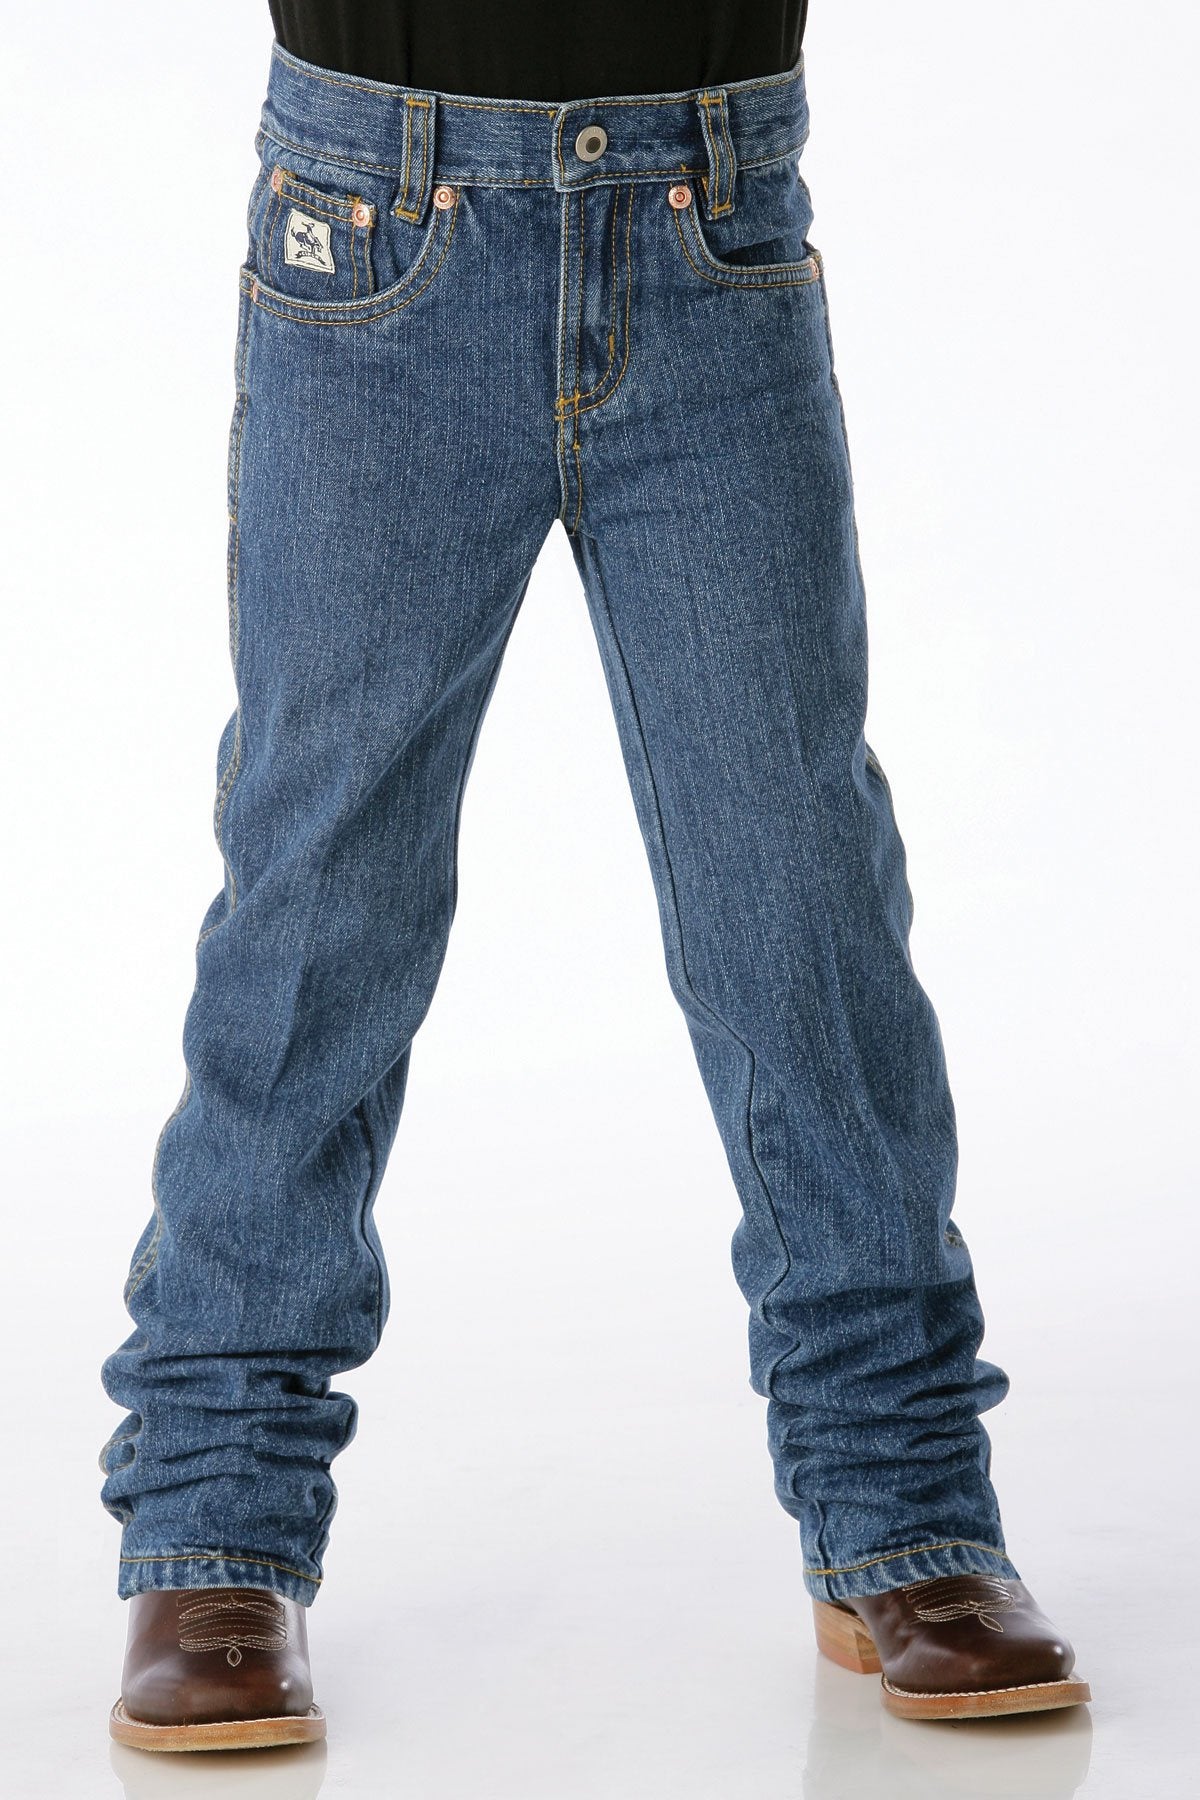 Cinch Boys Original Fit Jeans